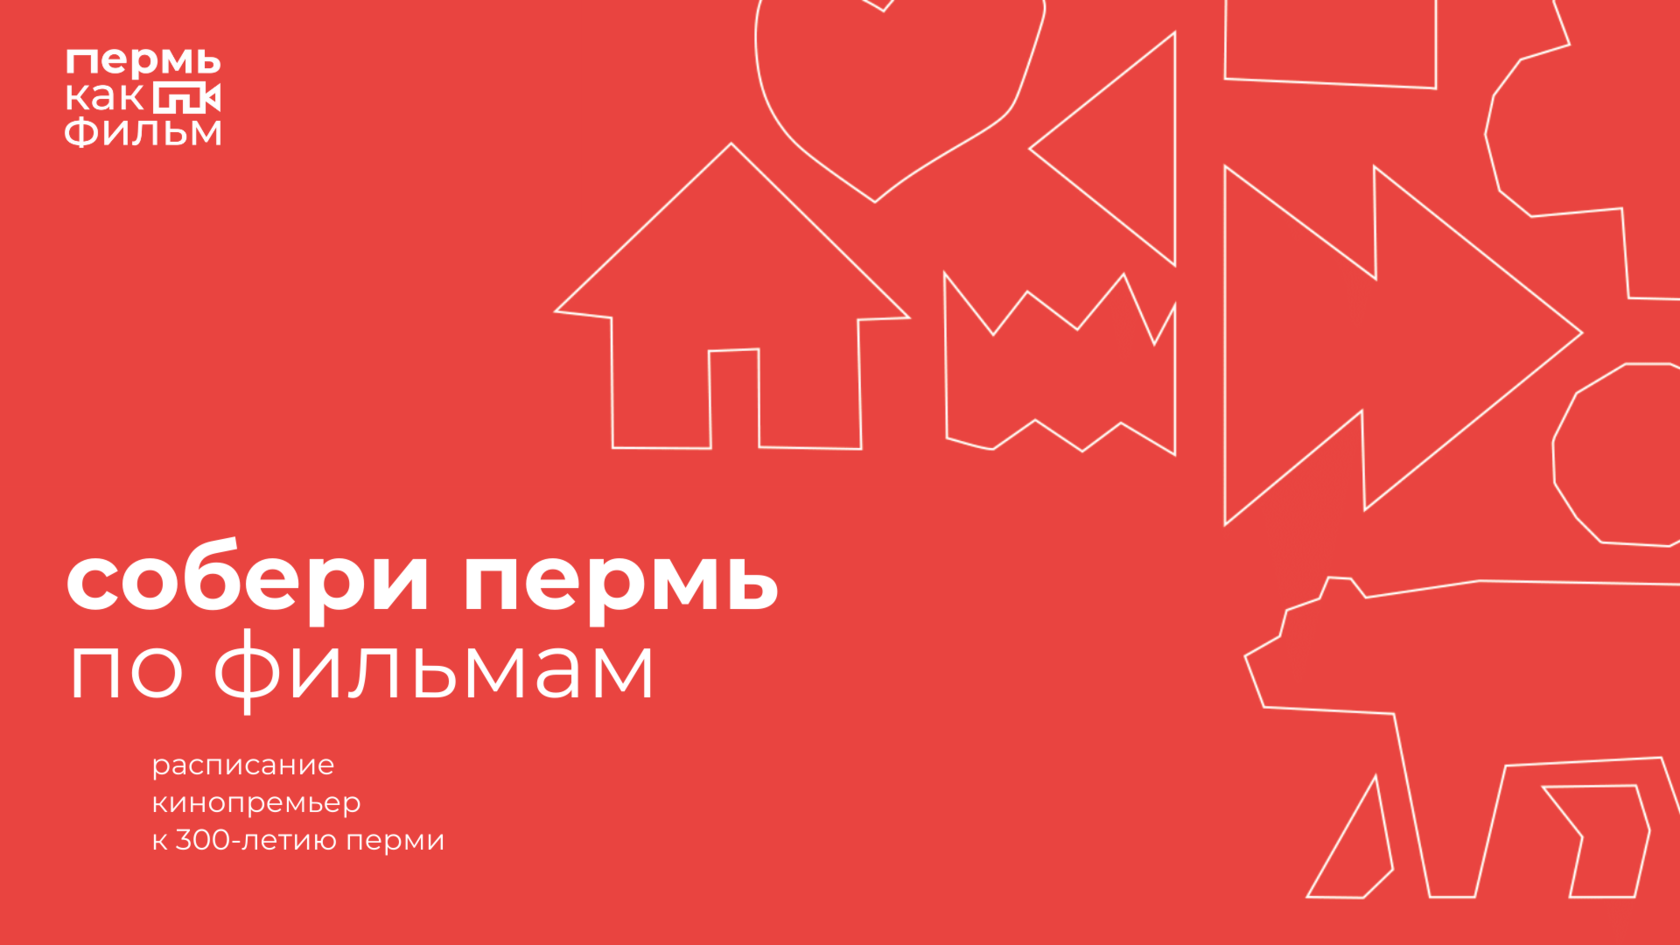 Объявлено расписание премьер проекта «Пермь как фильм»